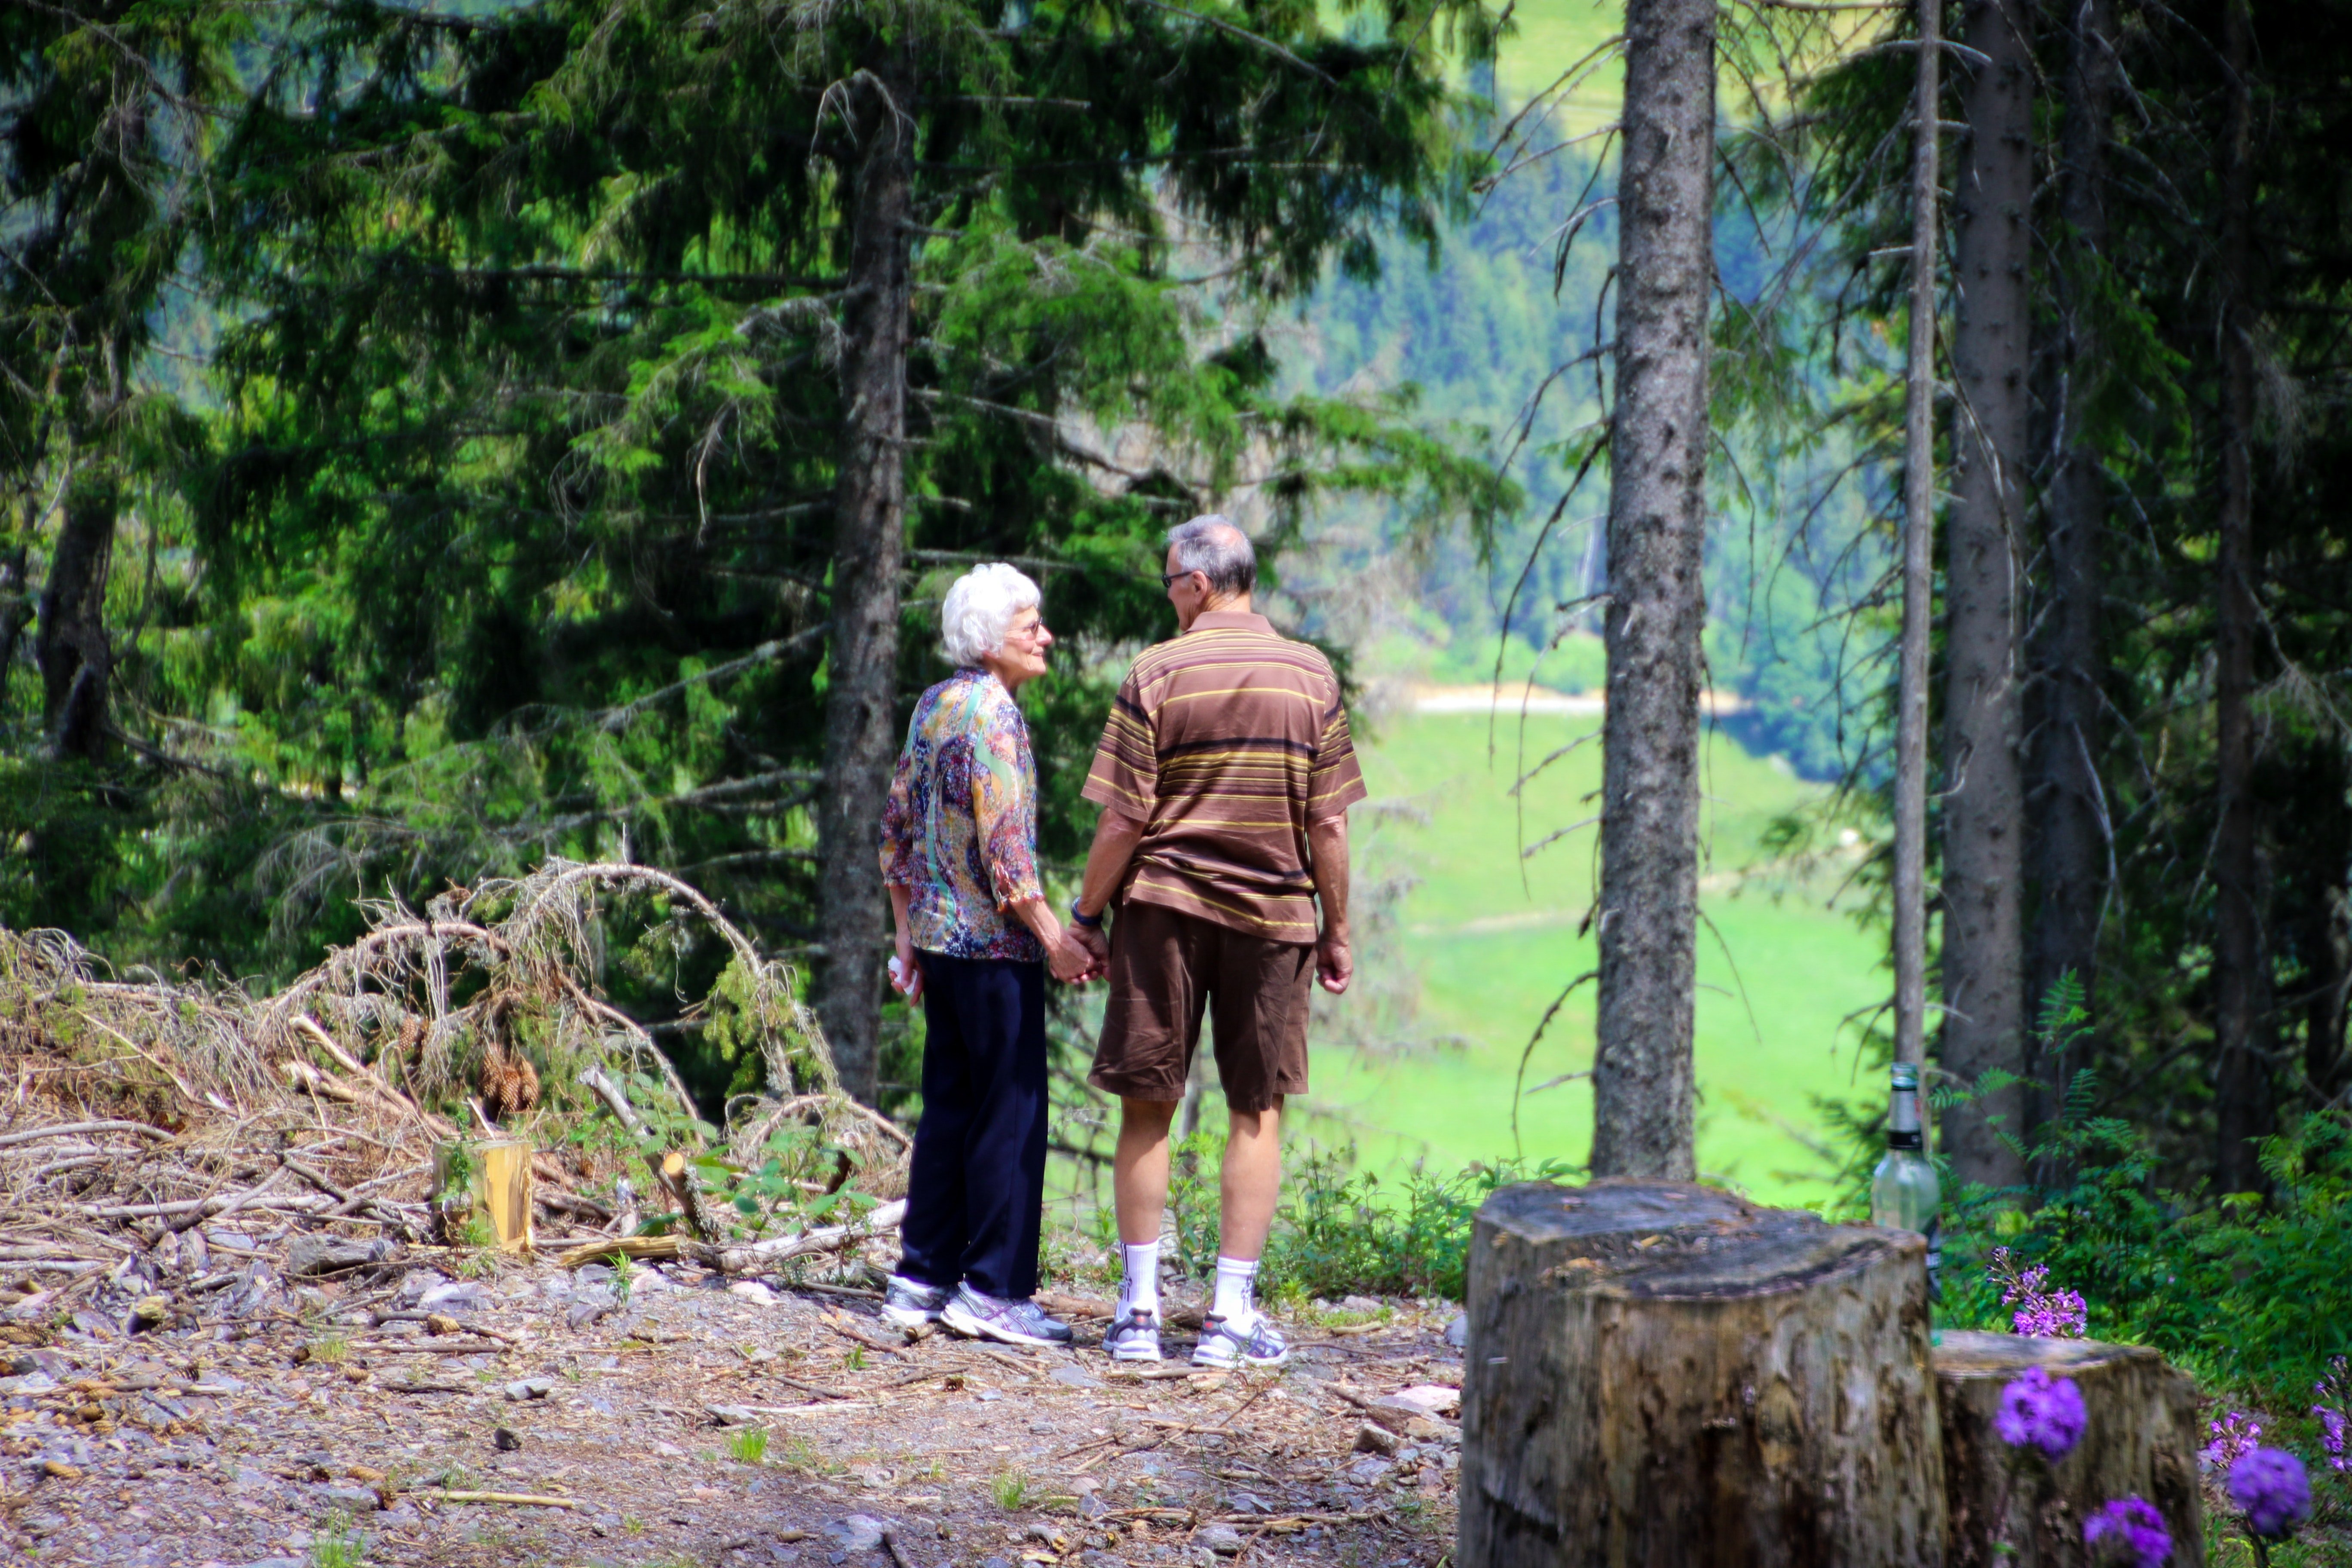 Jeffrey und Pamela genossen einen Spaziergang im nahe gelegenen Park. | Quelle: Pexels